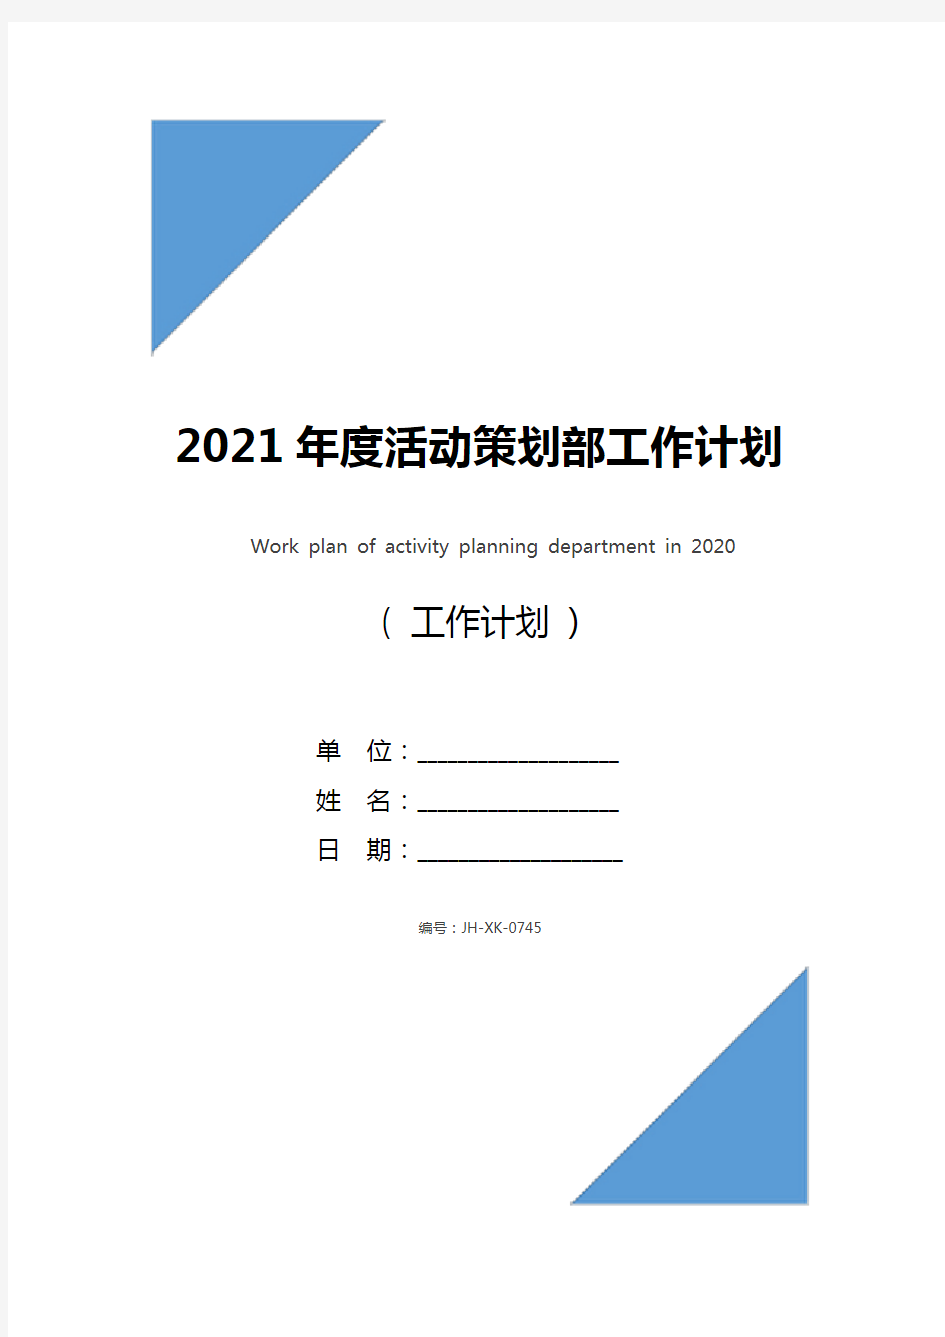 2021年度活动策划部工作计划(新版)